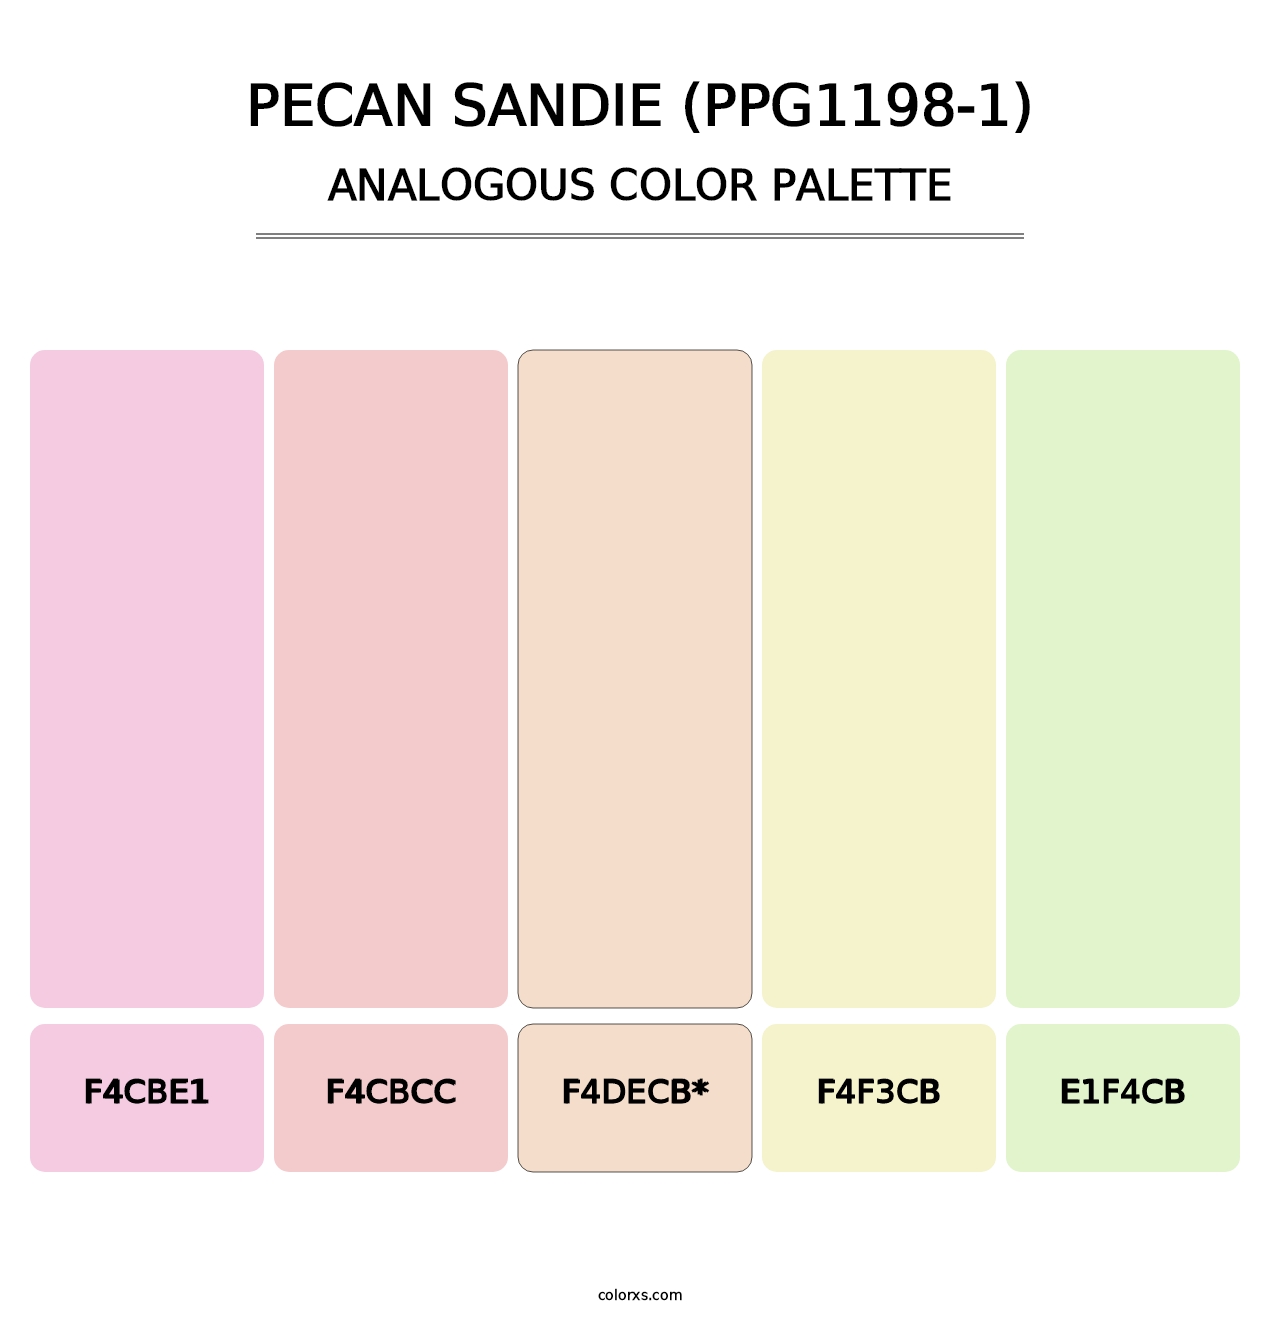 Pecan Sandie (PPG1198-1) - Analogous Color Palette